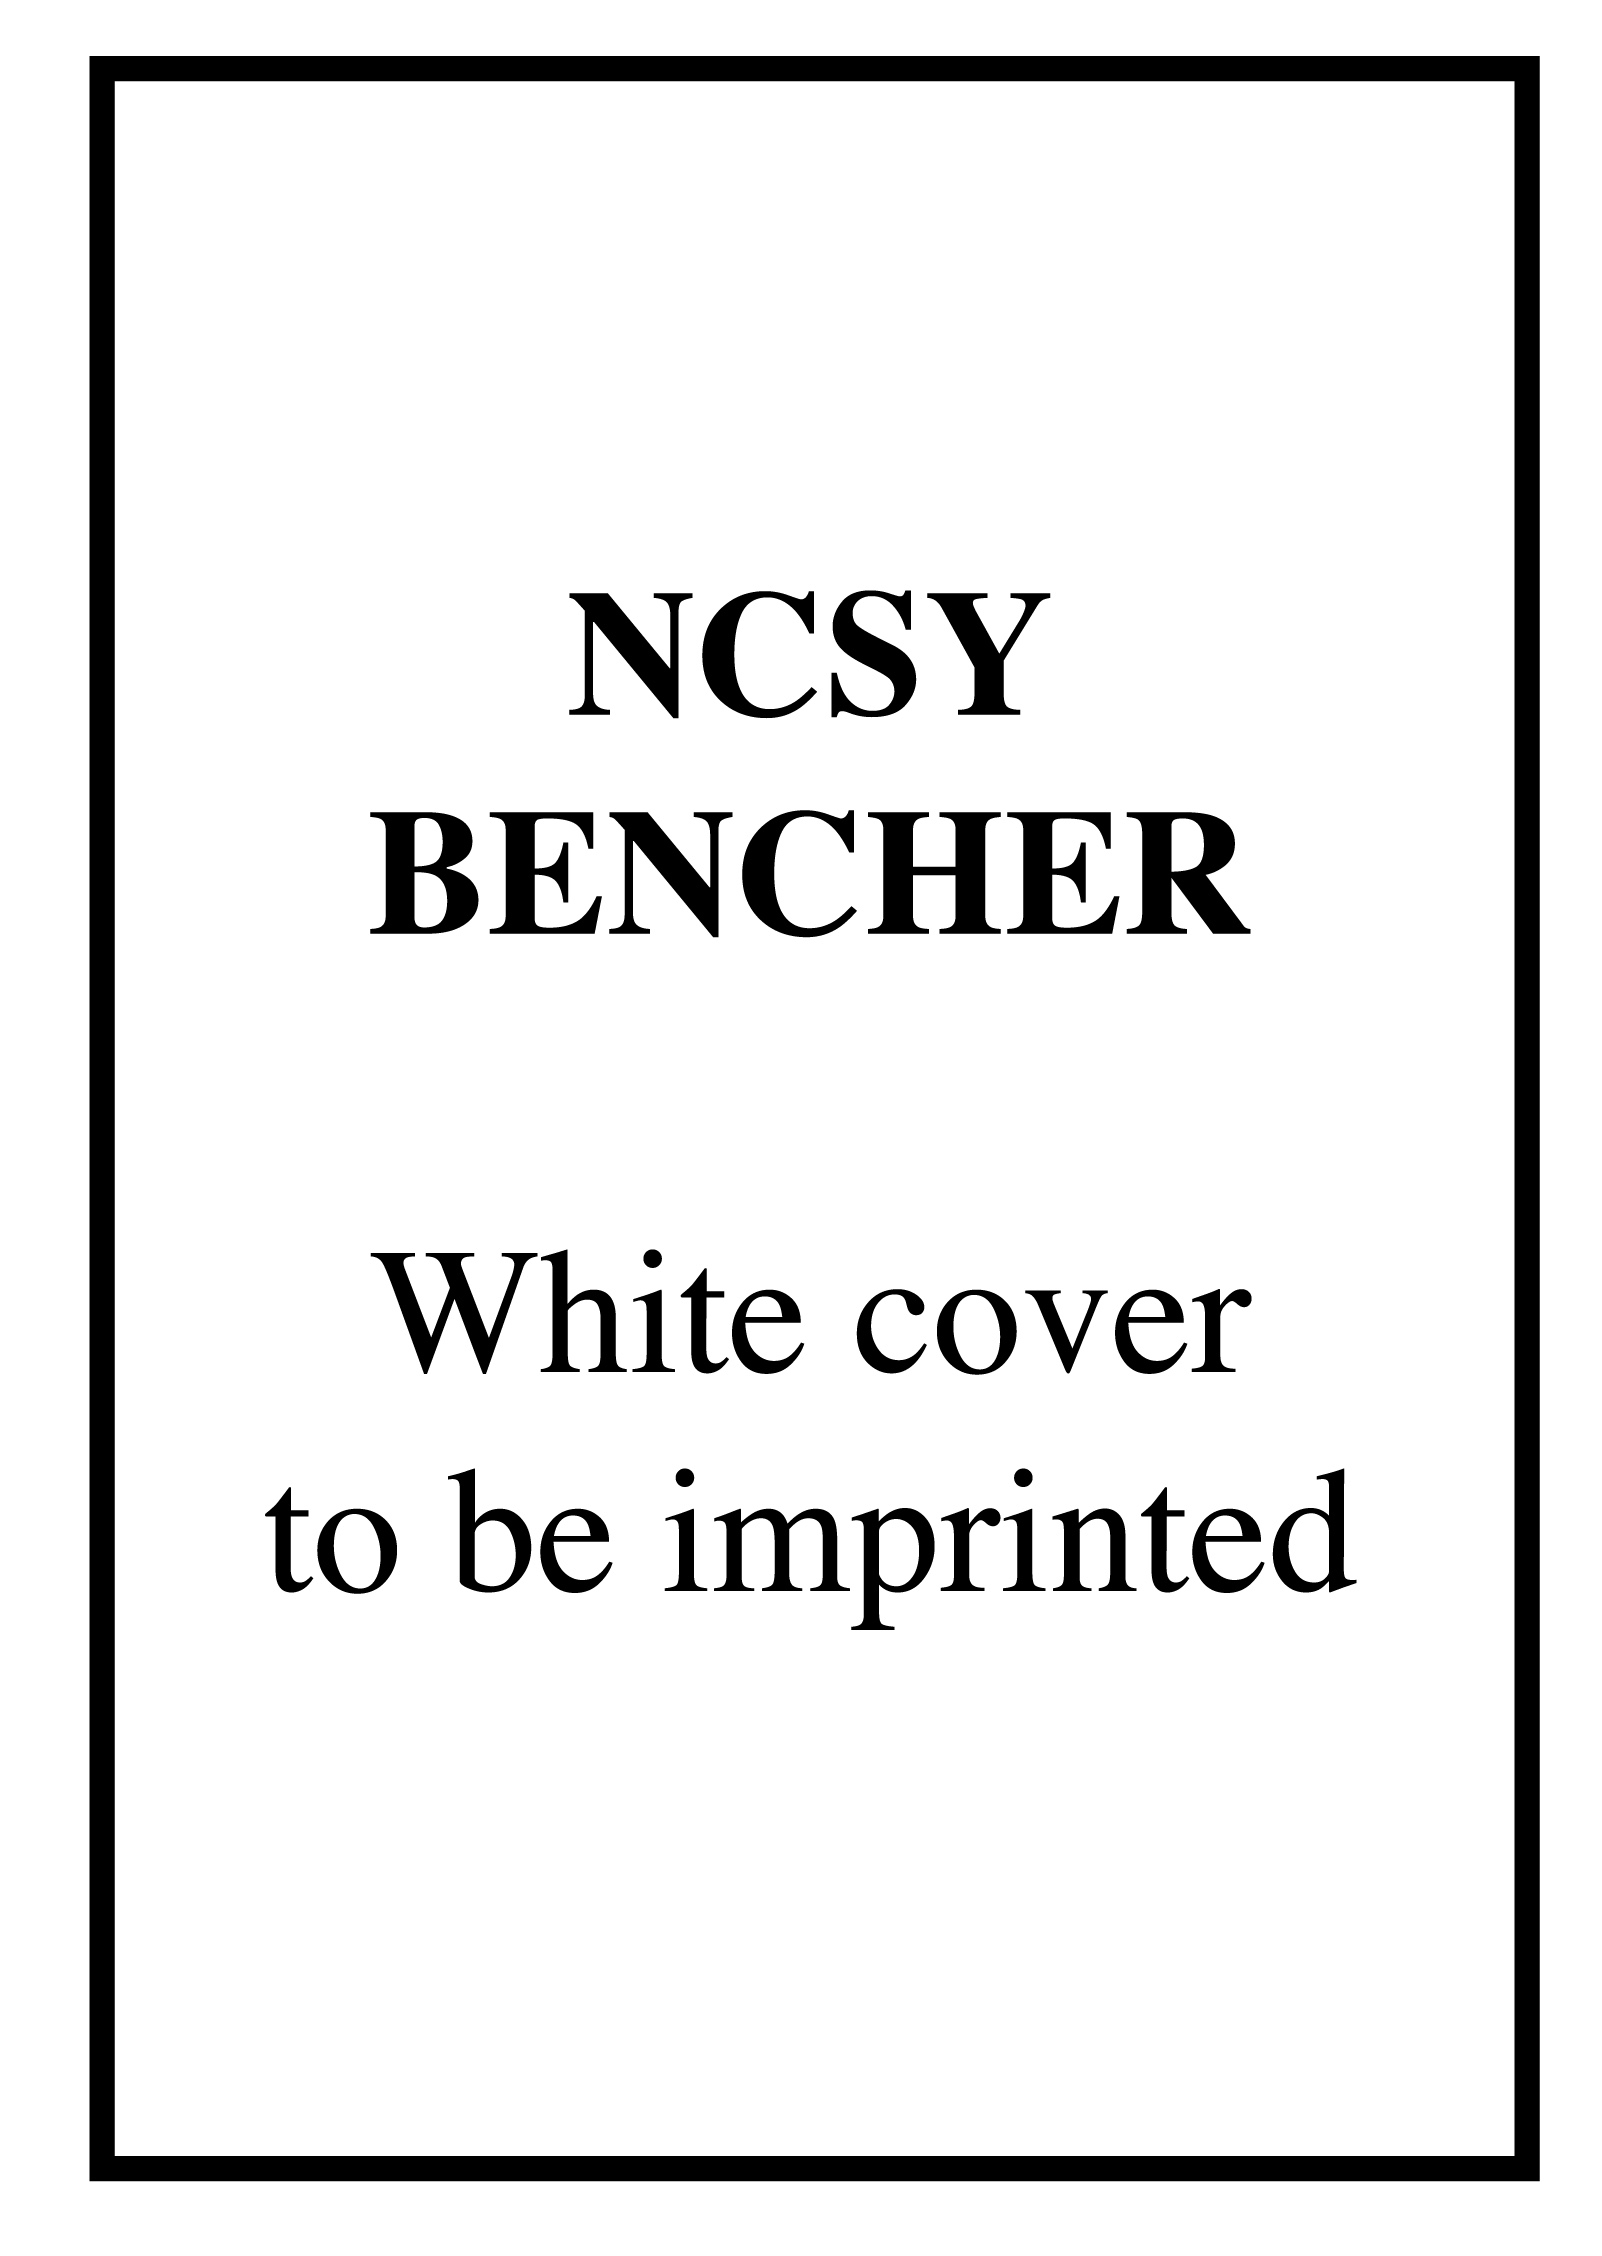 NCSY Benchar